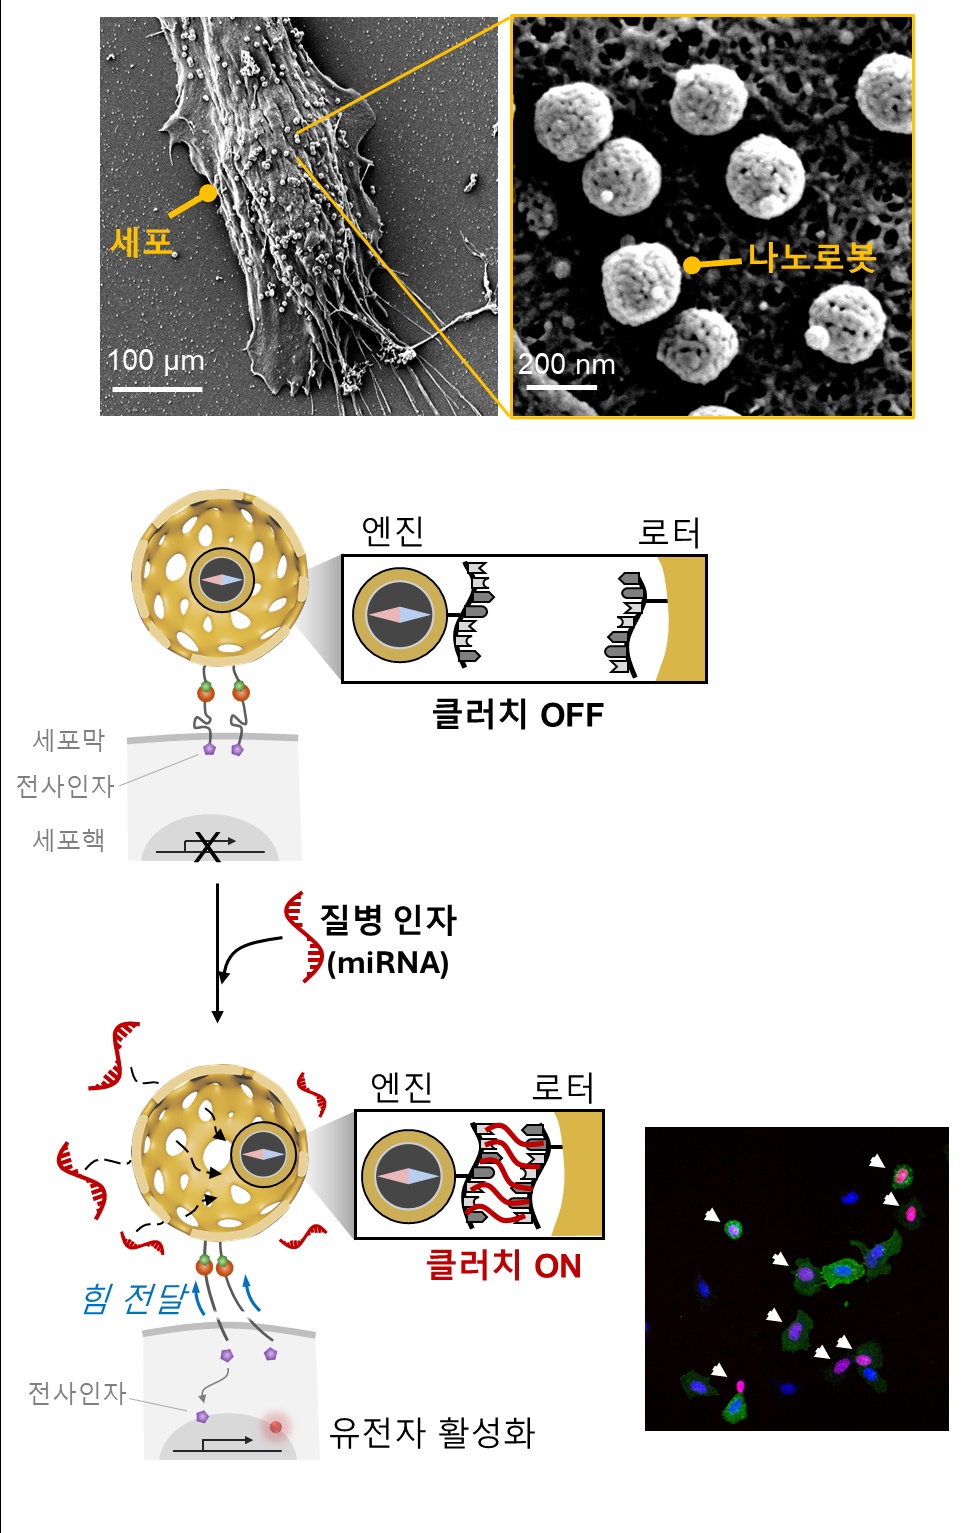 (상단) 세포와 결합한 클러치 나노로봇의 전자현미경 사진.
(하단) 질병 인자가 존재하는 경우 클러치 나노로봇이 힘을 발생하여, 세포의 유전자 활성을 유도함(활성화된 세포는 빨간색 형광 표시).